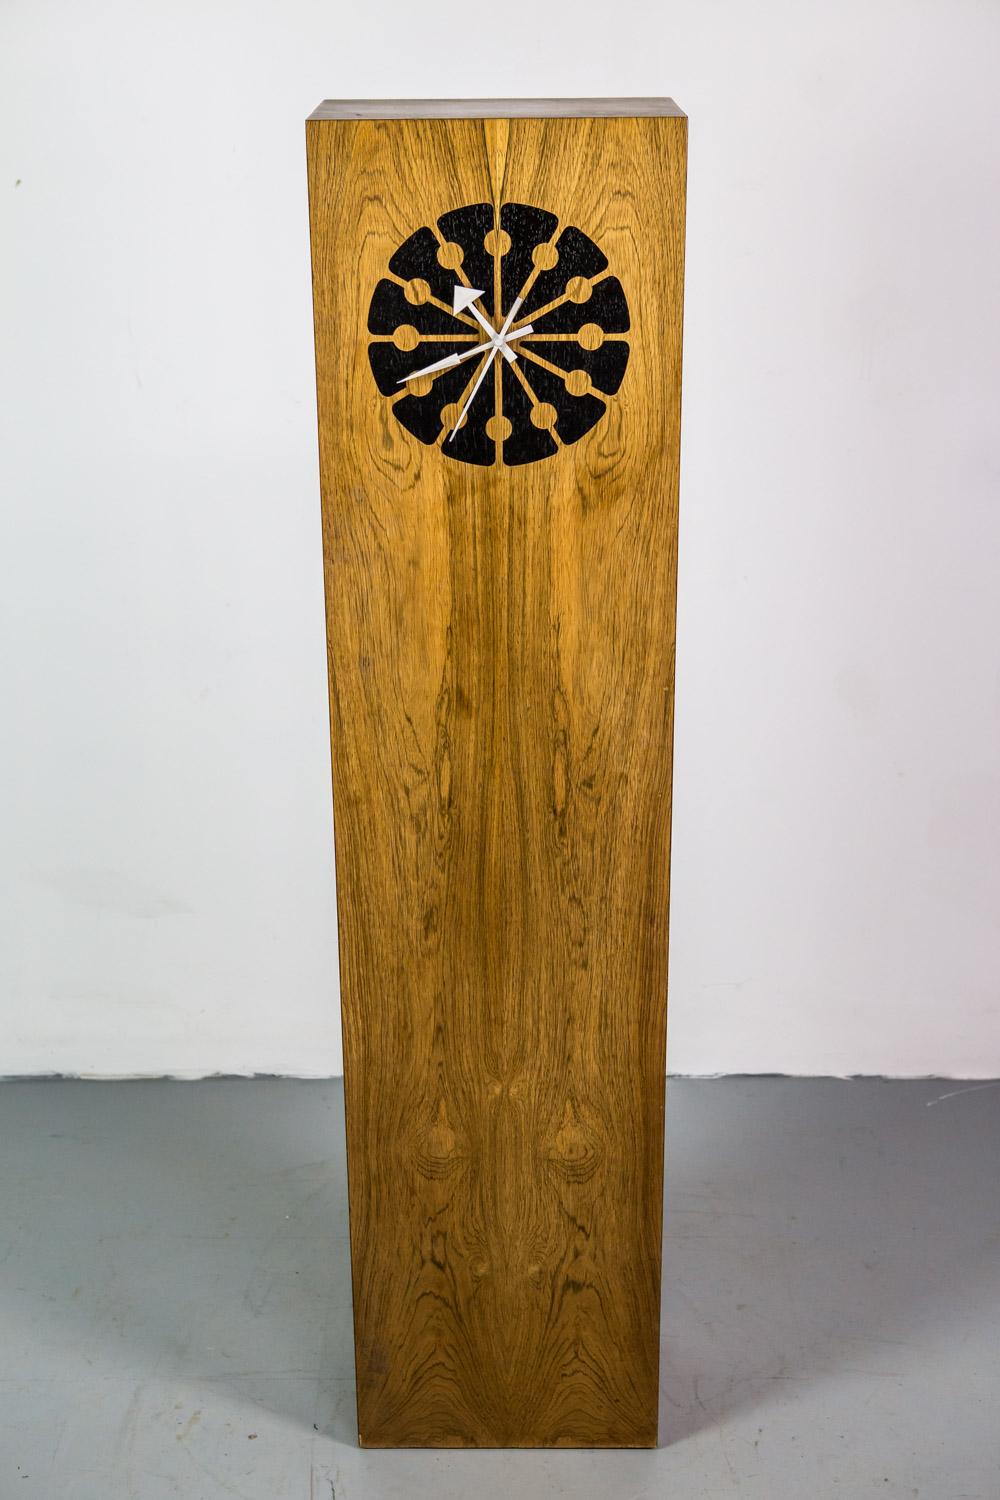 Declaration floor clock by Kipp Stewart for Drexel in wood.